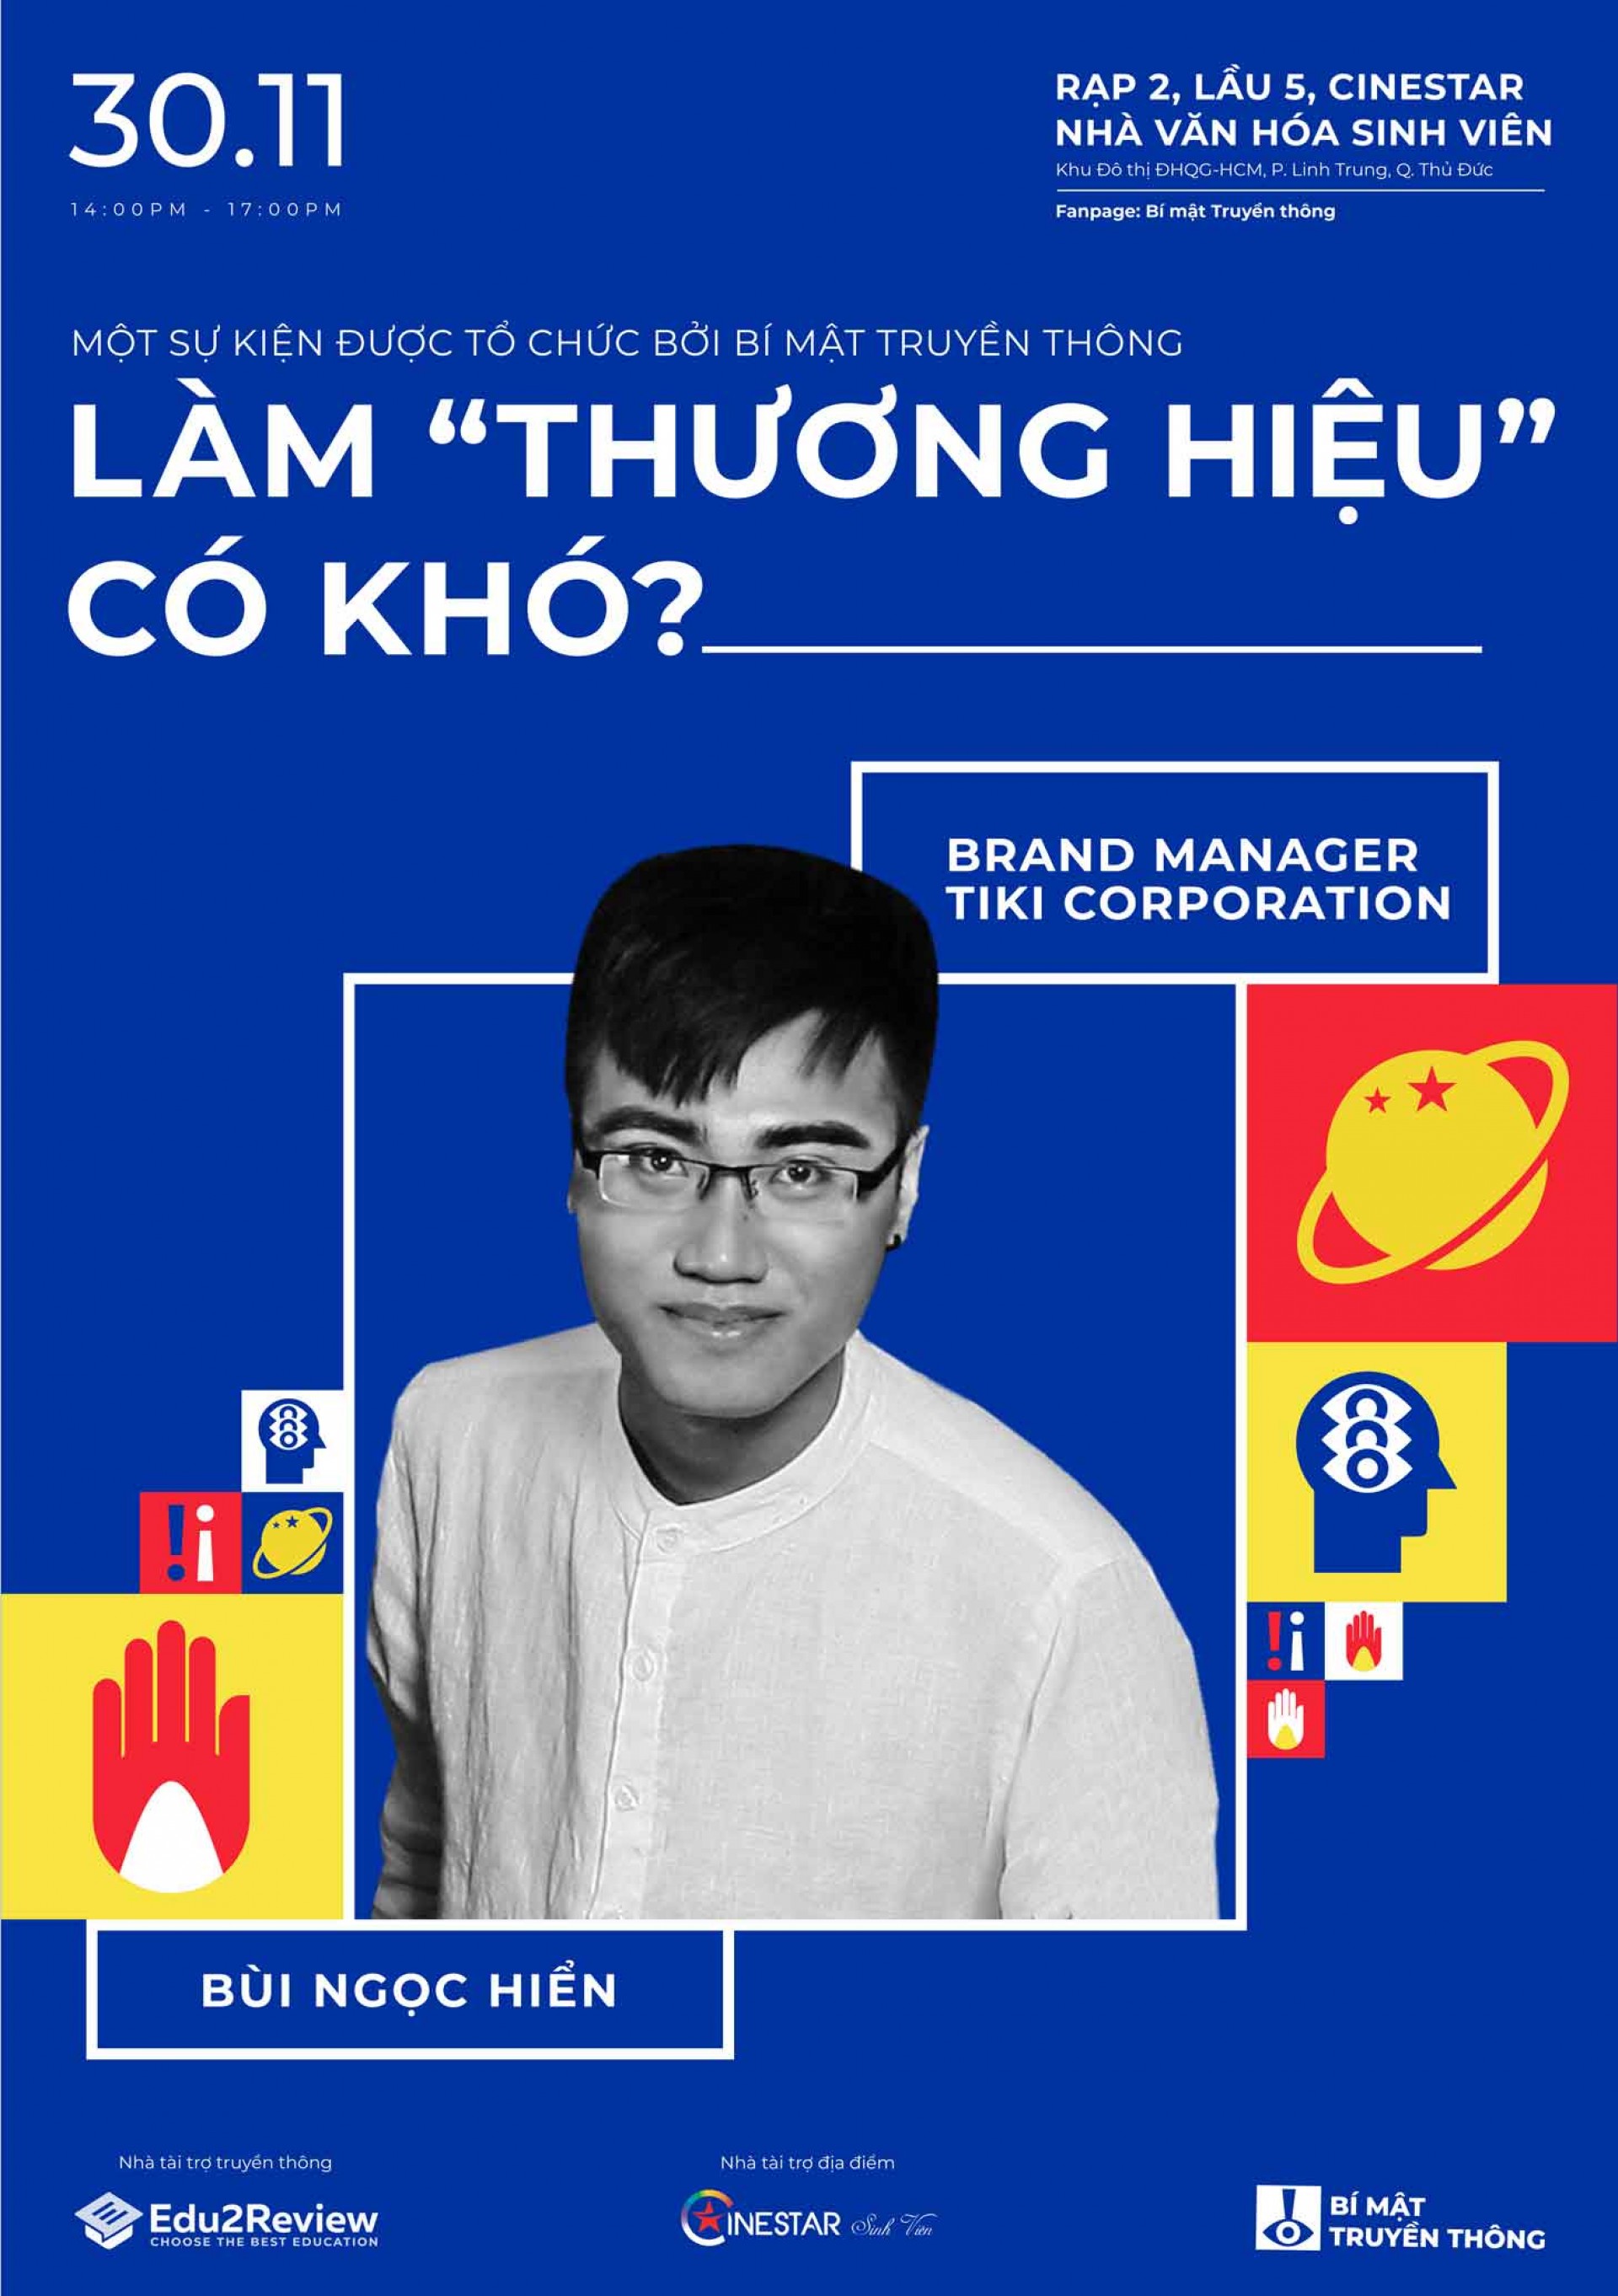 “Tiki đi cùng sao Việt” – Sự thành công trong chiến dịch tiền tỷ